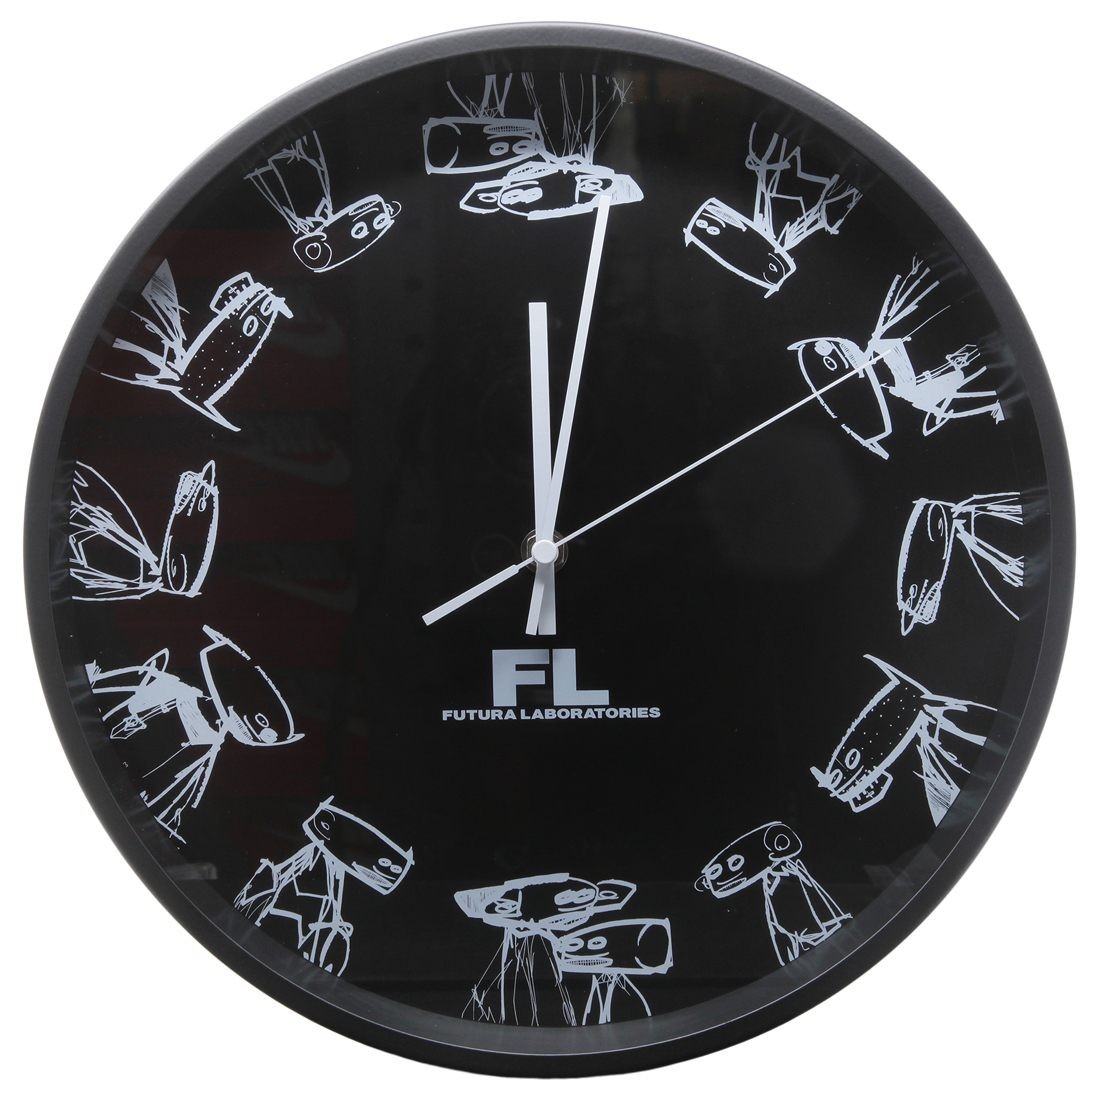 Futura Laboratories Wall Clock (black)